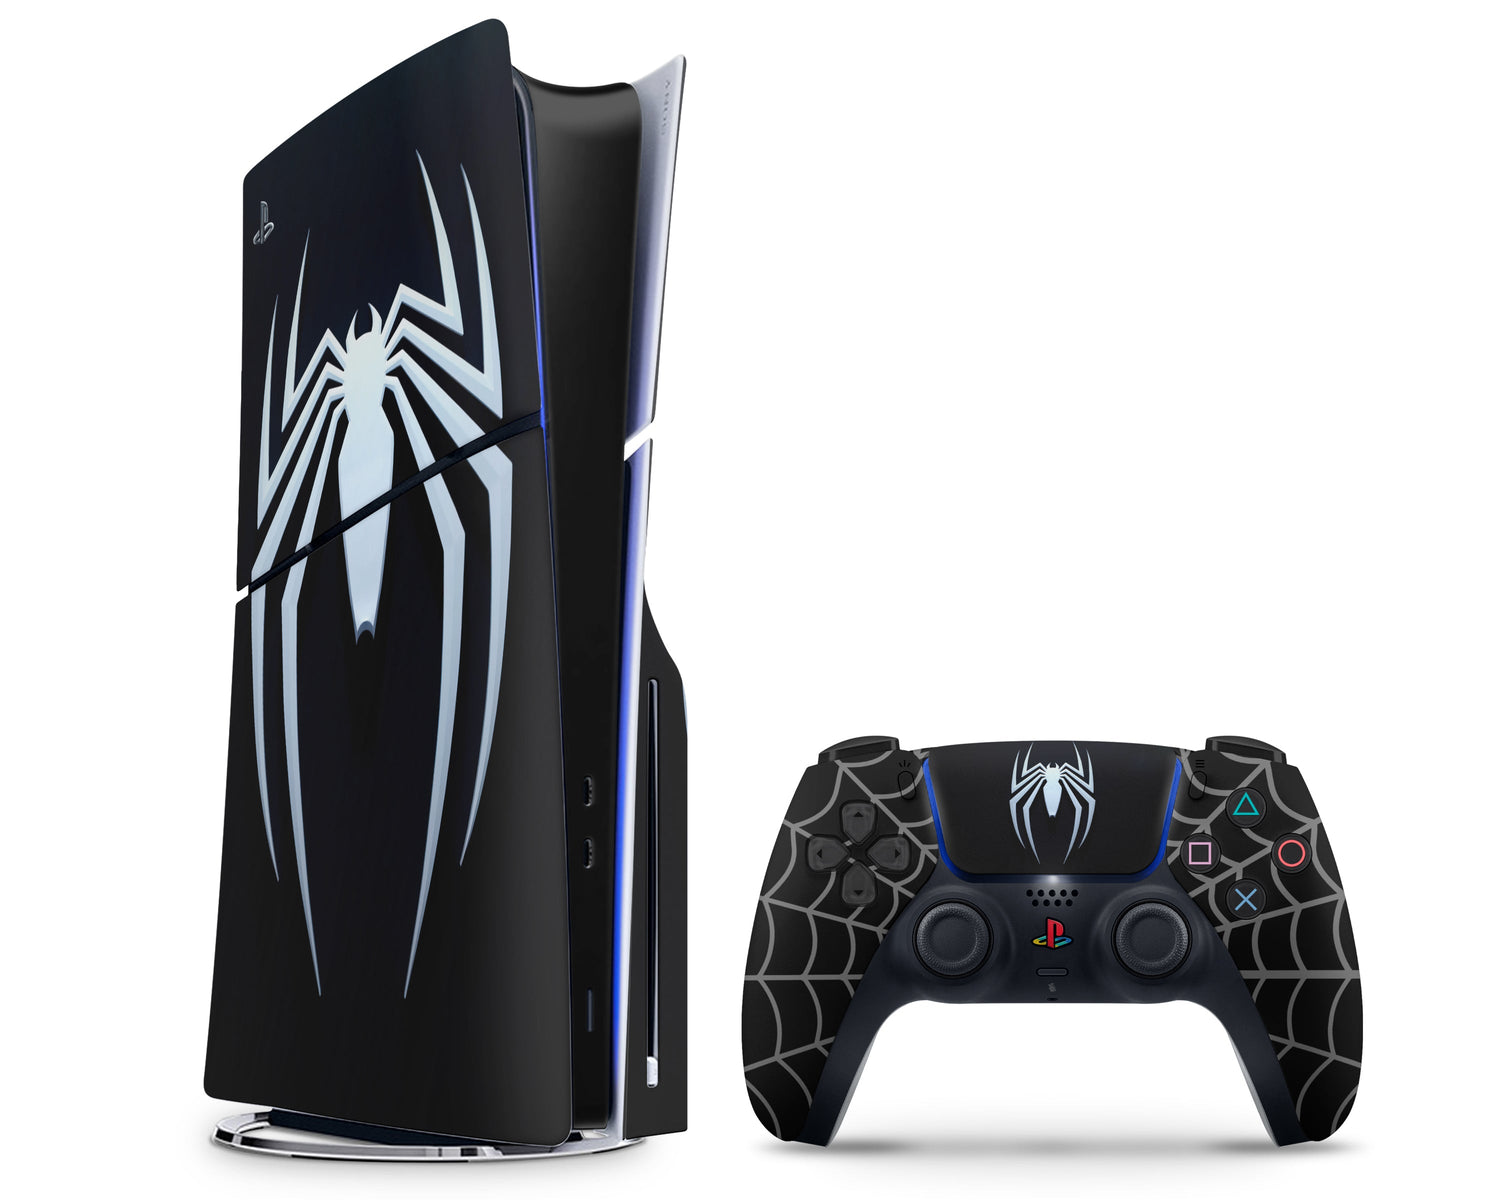 PlayStation 5 Slim Console Marvels Spider-Man 2 Bundle